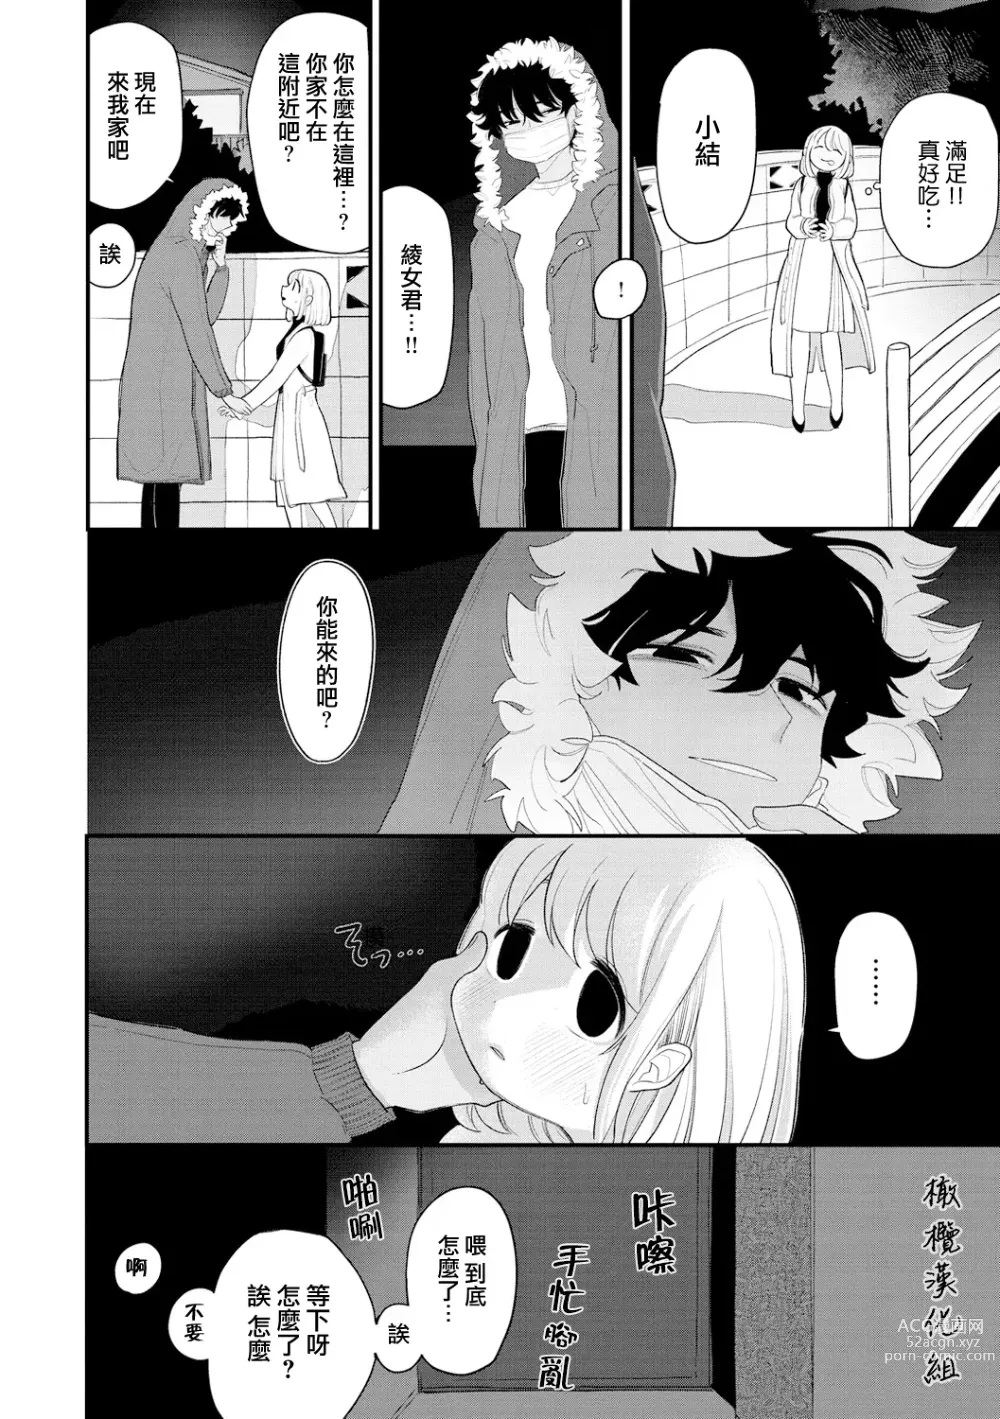 Page 8 of manga 好好相处吧